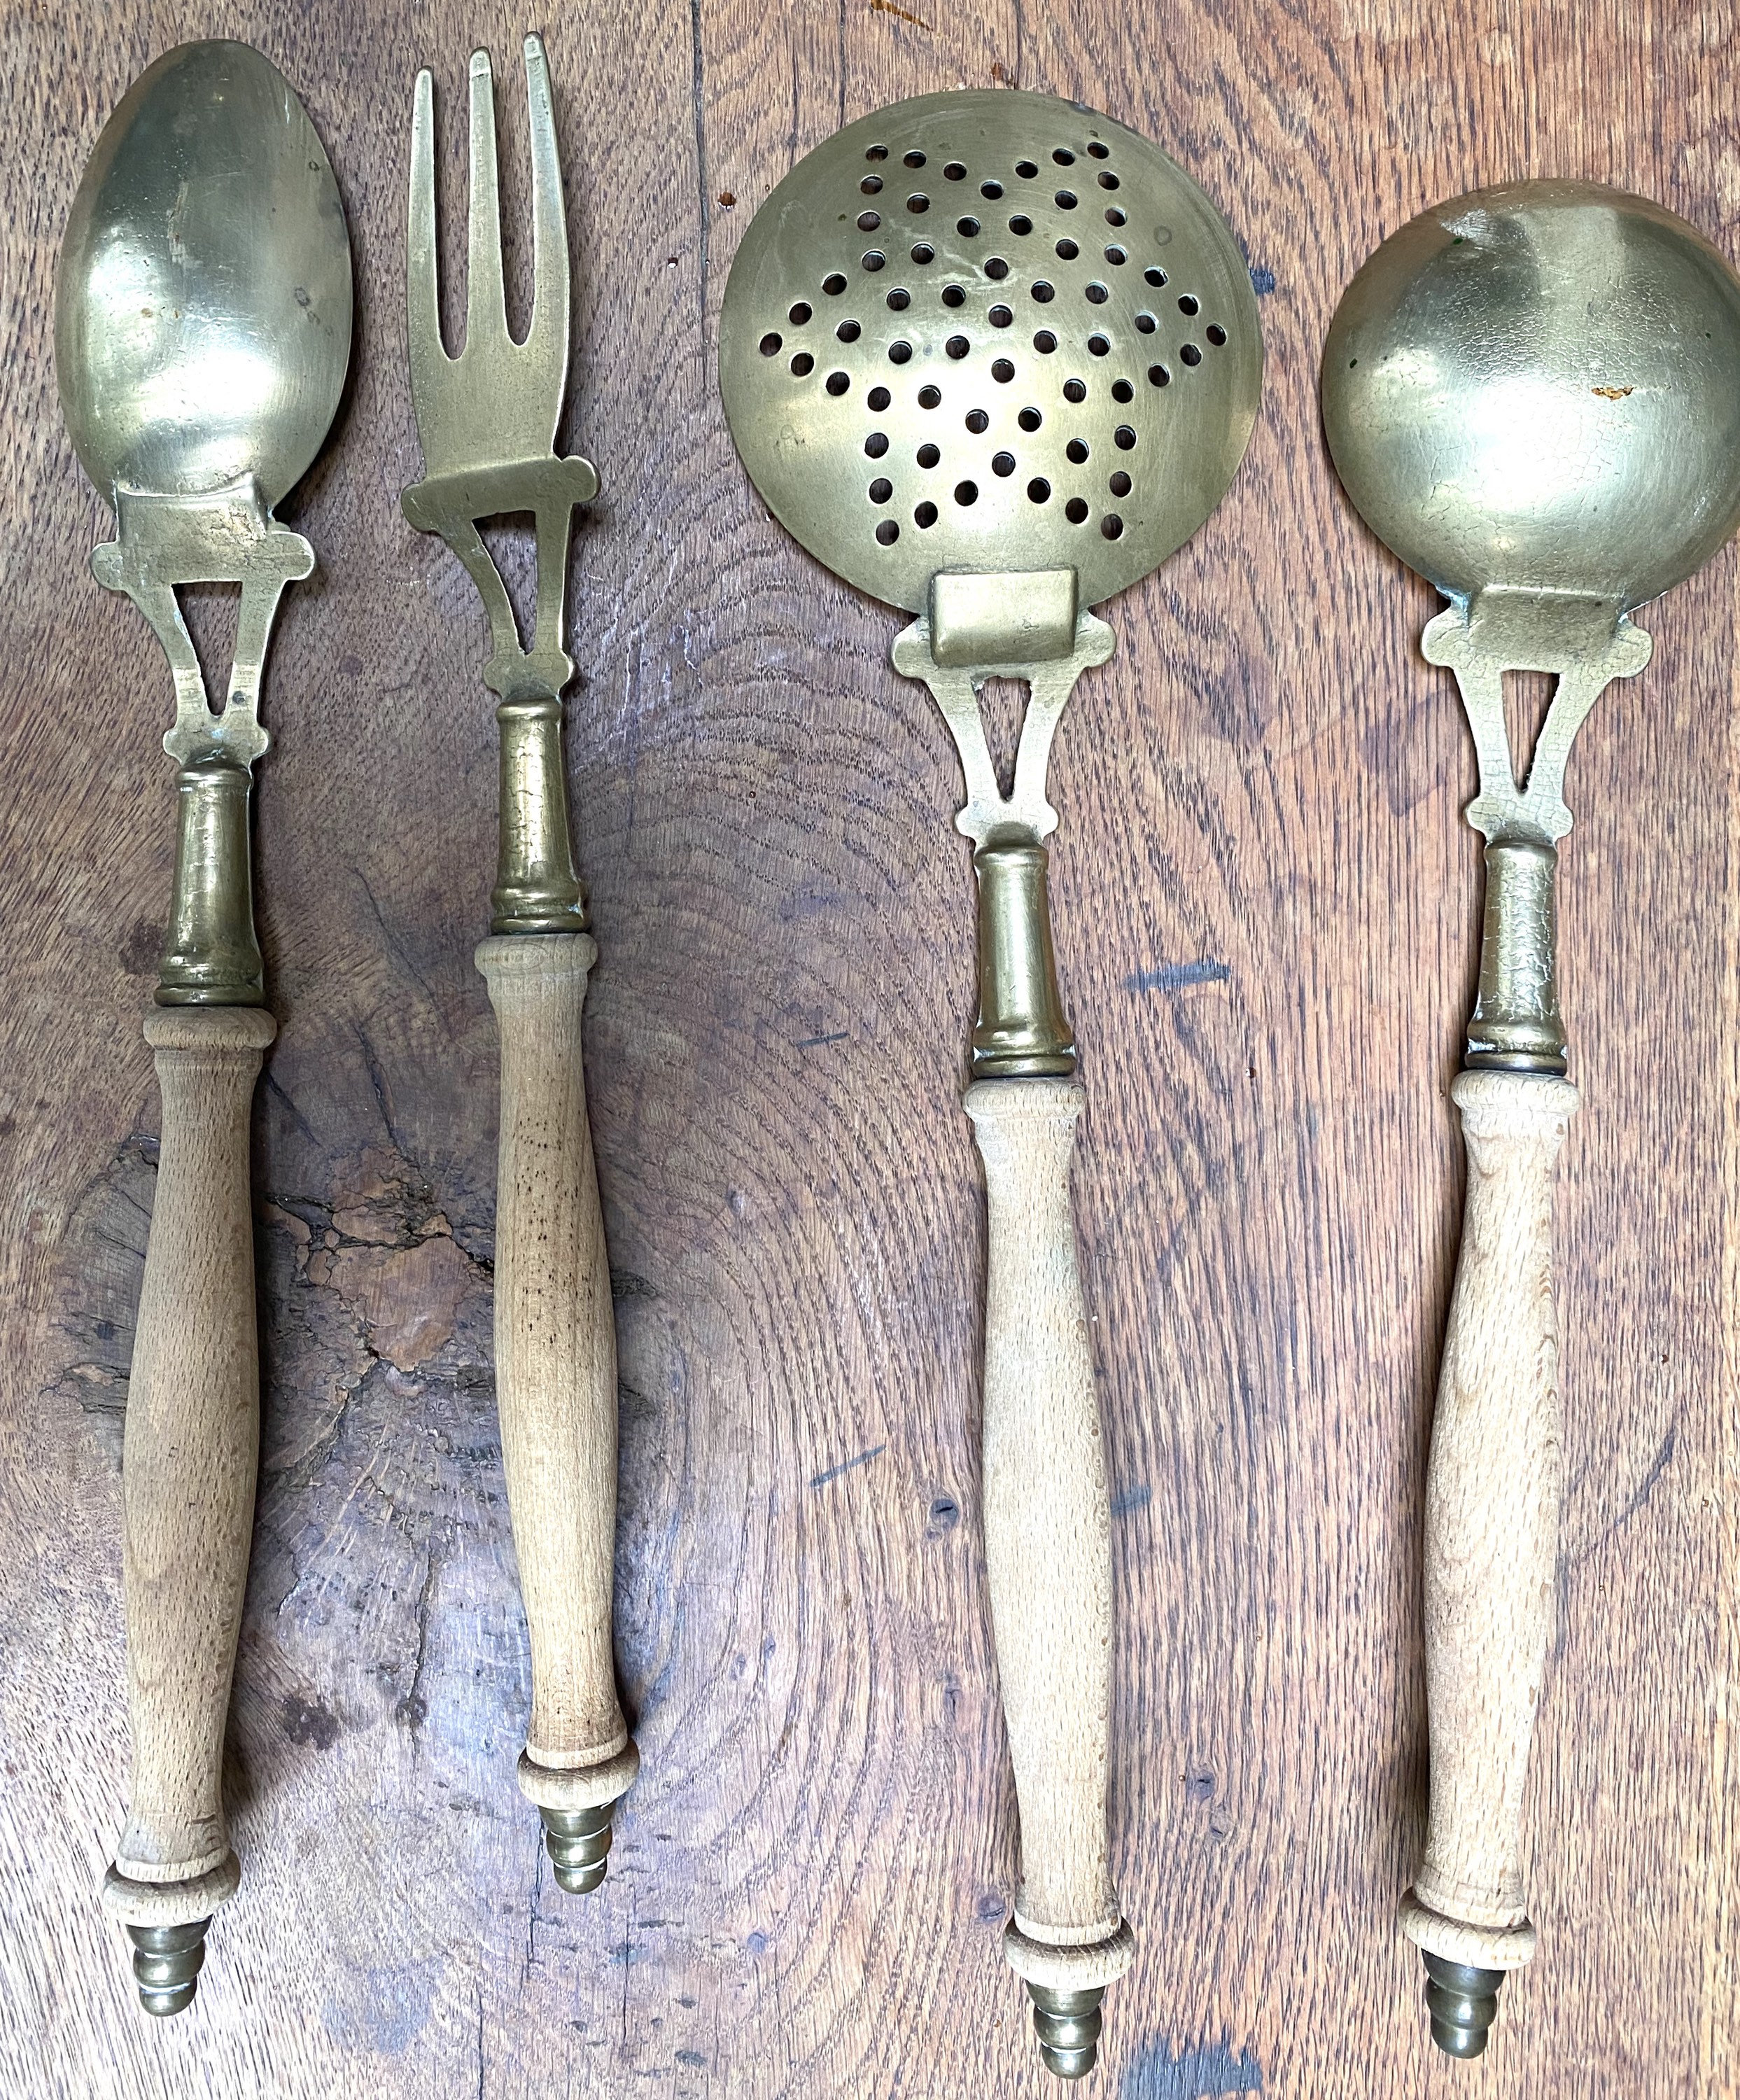 French vintage brass kitchen utensils with rail